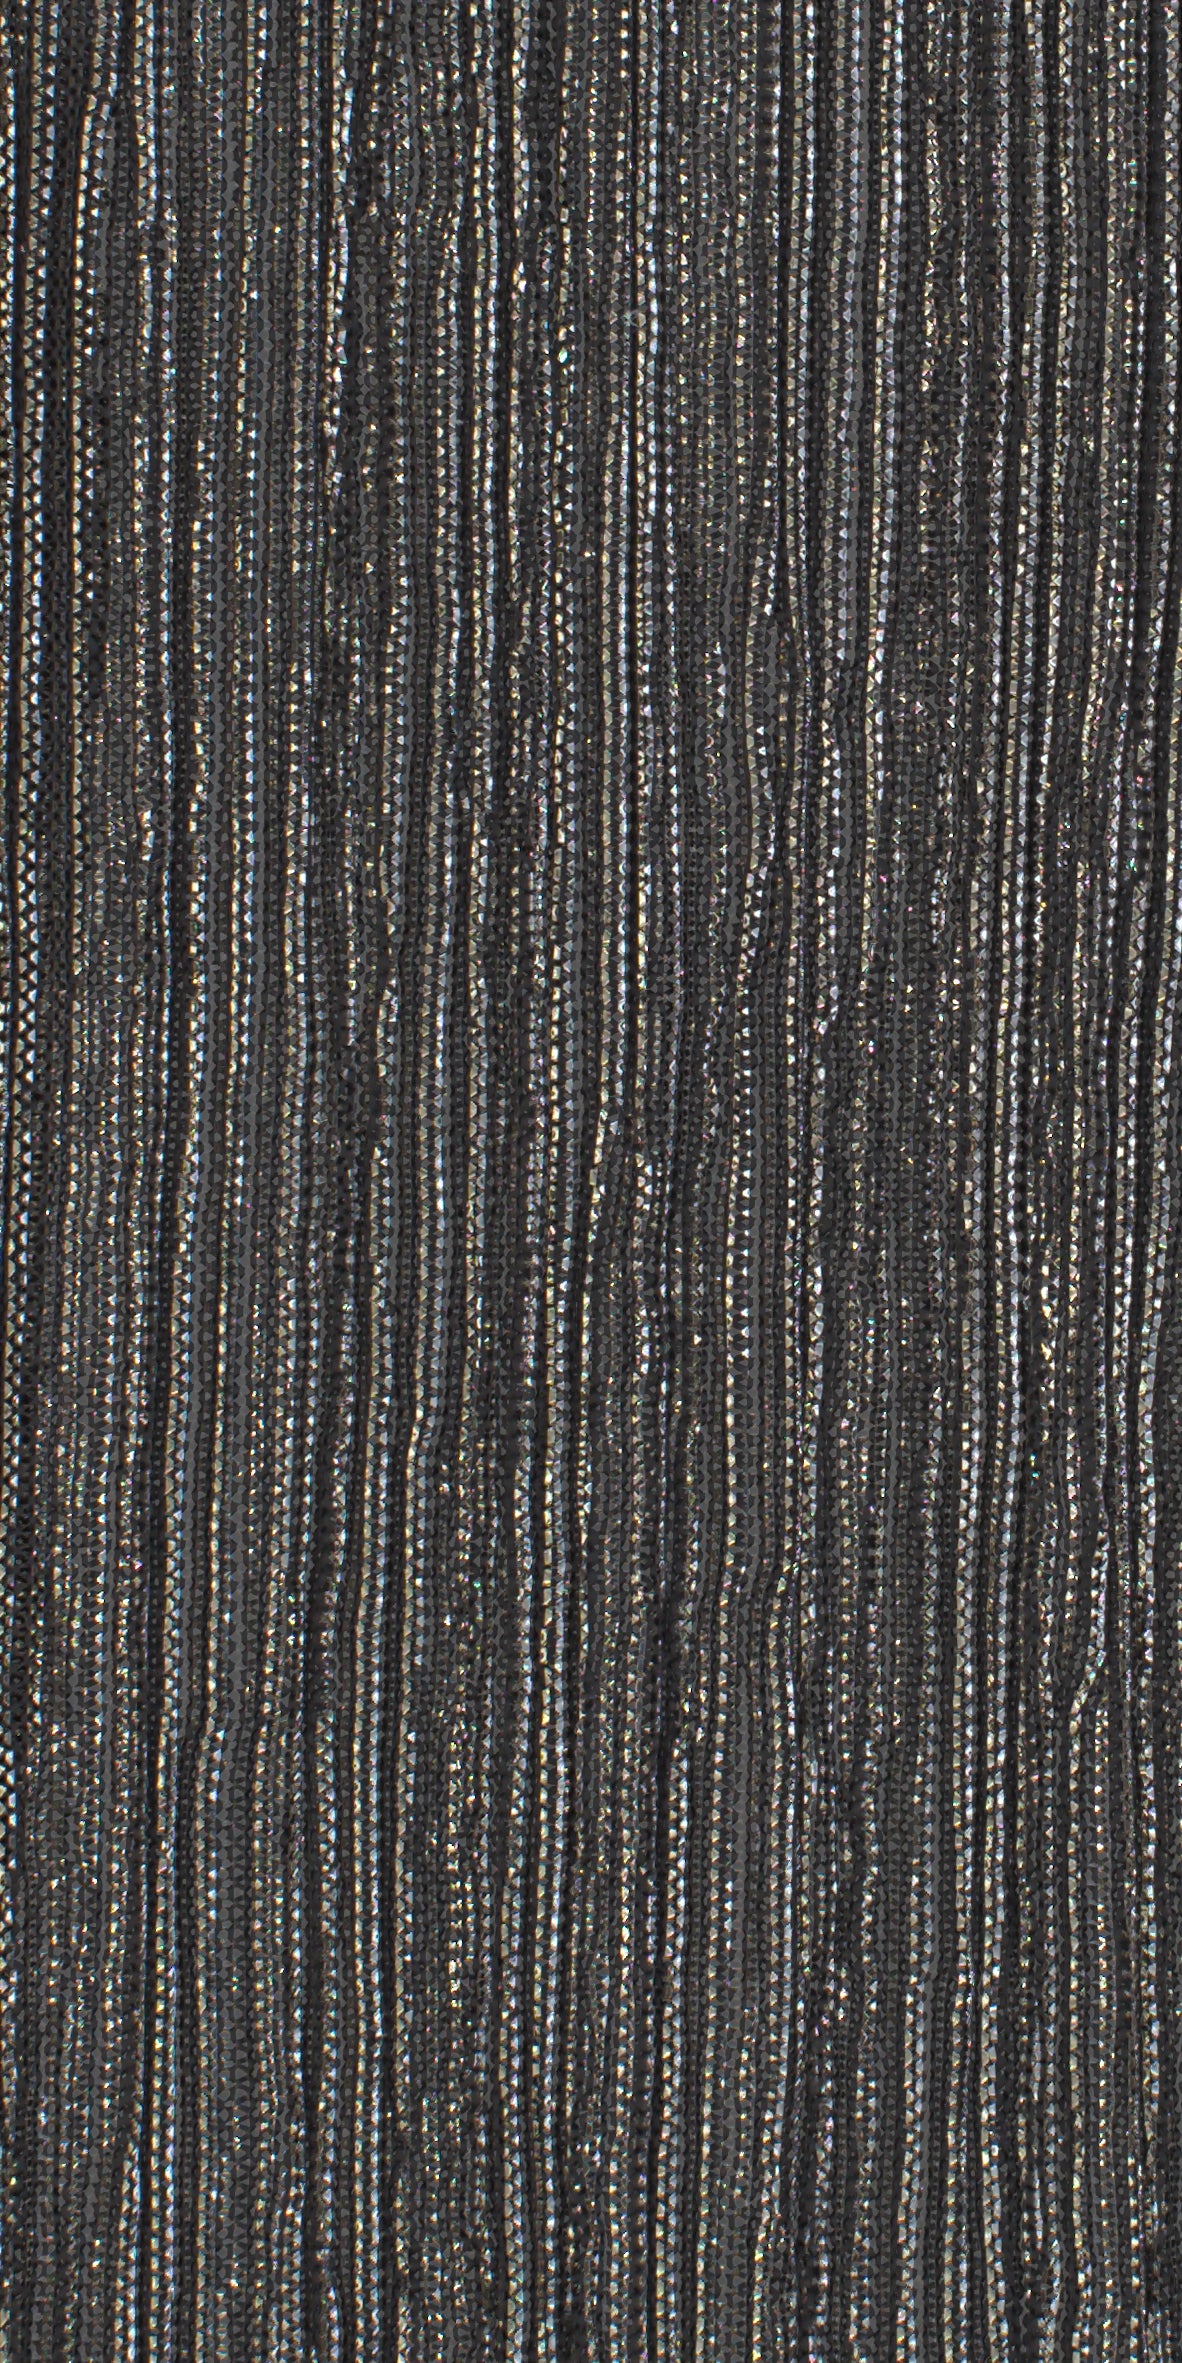 12006-02 Gold Black Metallic Pleat Plain Dyed Blend 126g/yd 56&quot; black blend gold knit metallic plain dyed pleat ppl new Metallic, Pleat - knit fabric - woven fabric - fabric company - fabric wholesale - fabric b2b - fabric factory - high quality fabric - hong kong fabric - fabric hk - acetate fabric - cotton fabric - linen fabric - metallic fabric - nylon fabric - polyester fabric - spandex fabric - chun wing hing - cwh hk - fabric worldwide ship - 針織布 - 梳織布 - 布料公司- 布料批發 - 香港布料 - 秦榮興